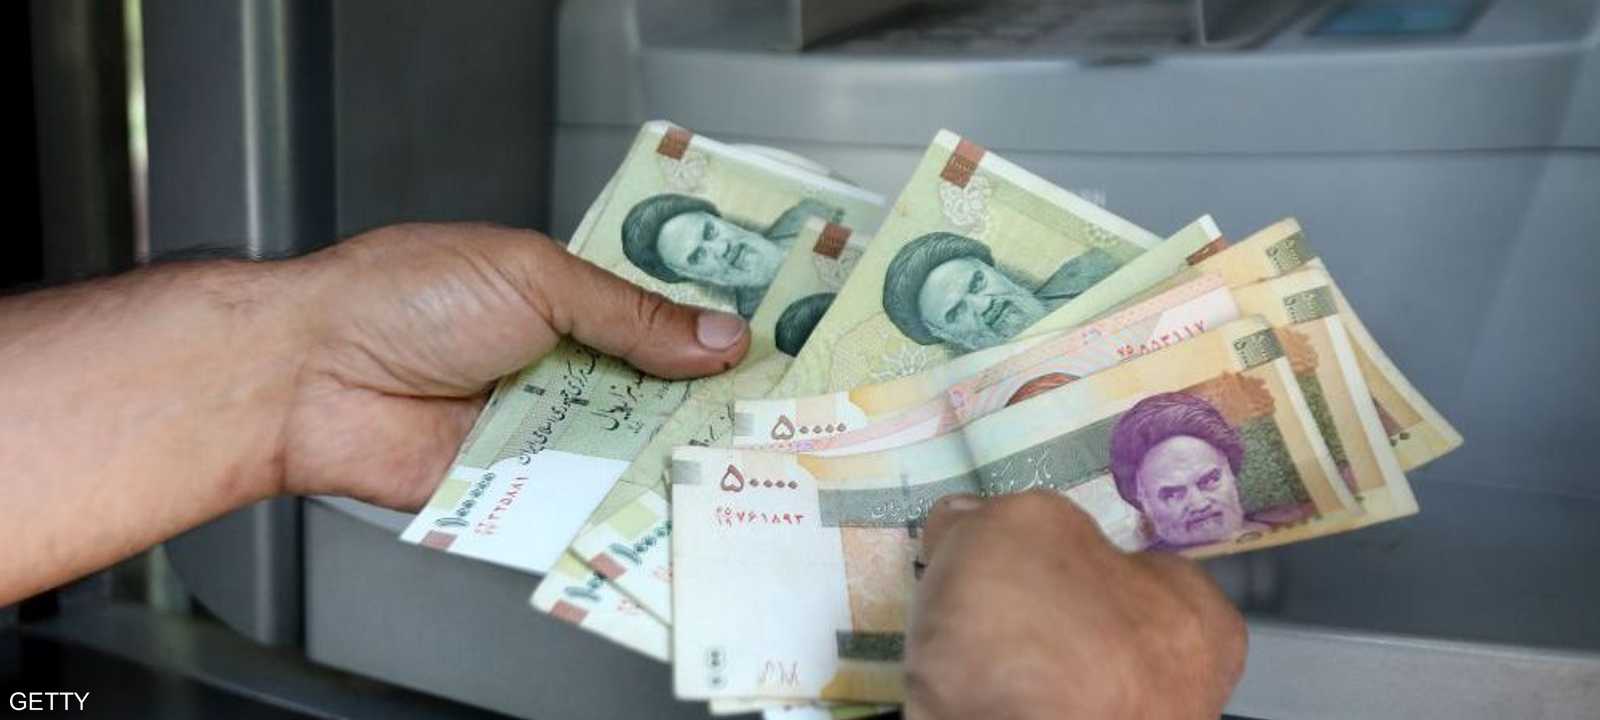 تراجعت العملة الإيرانية من مستوى 32 ألف ريال